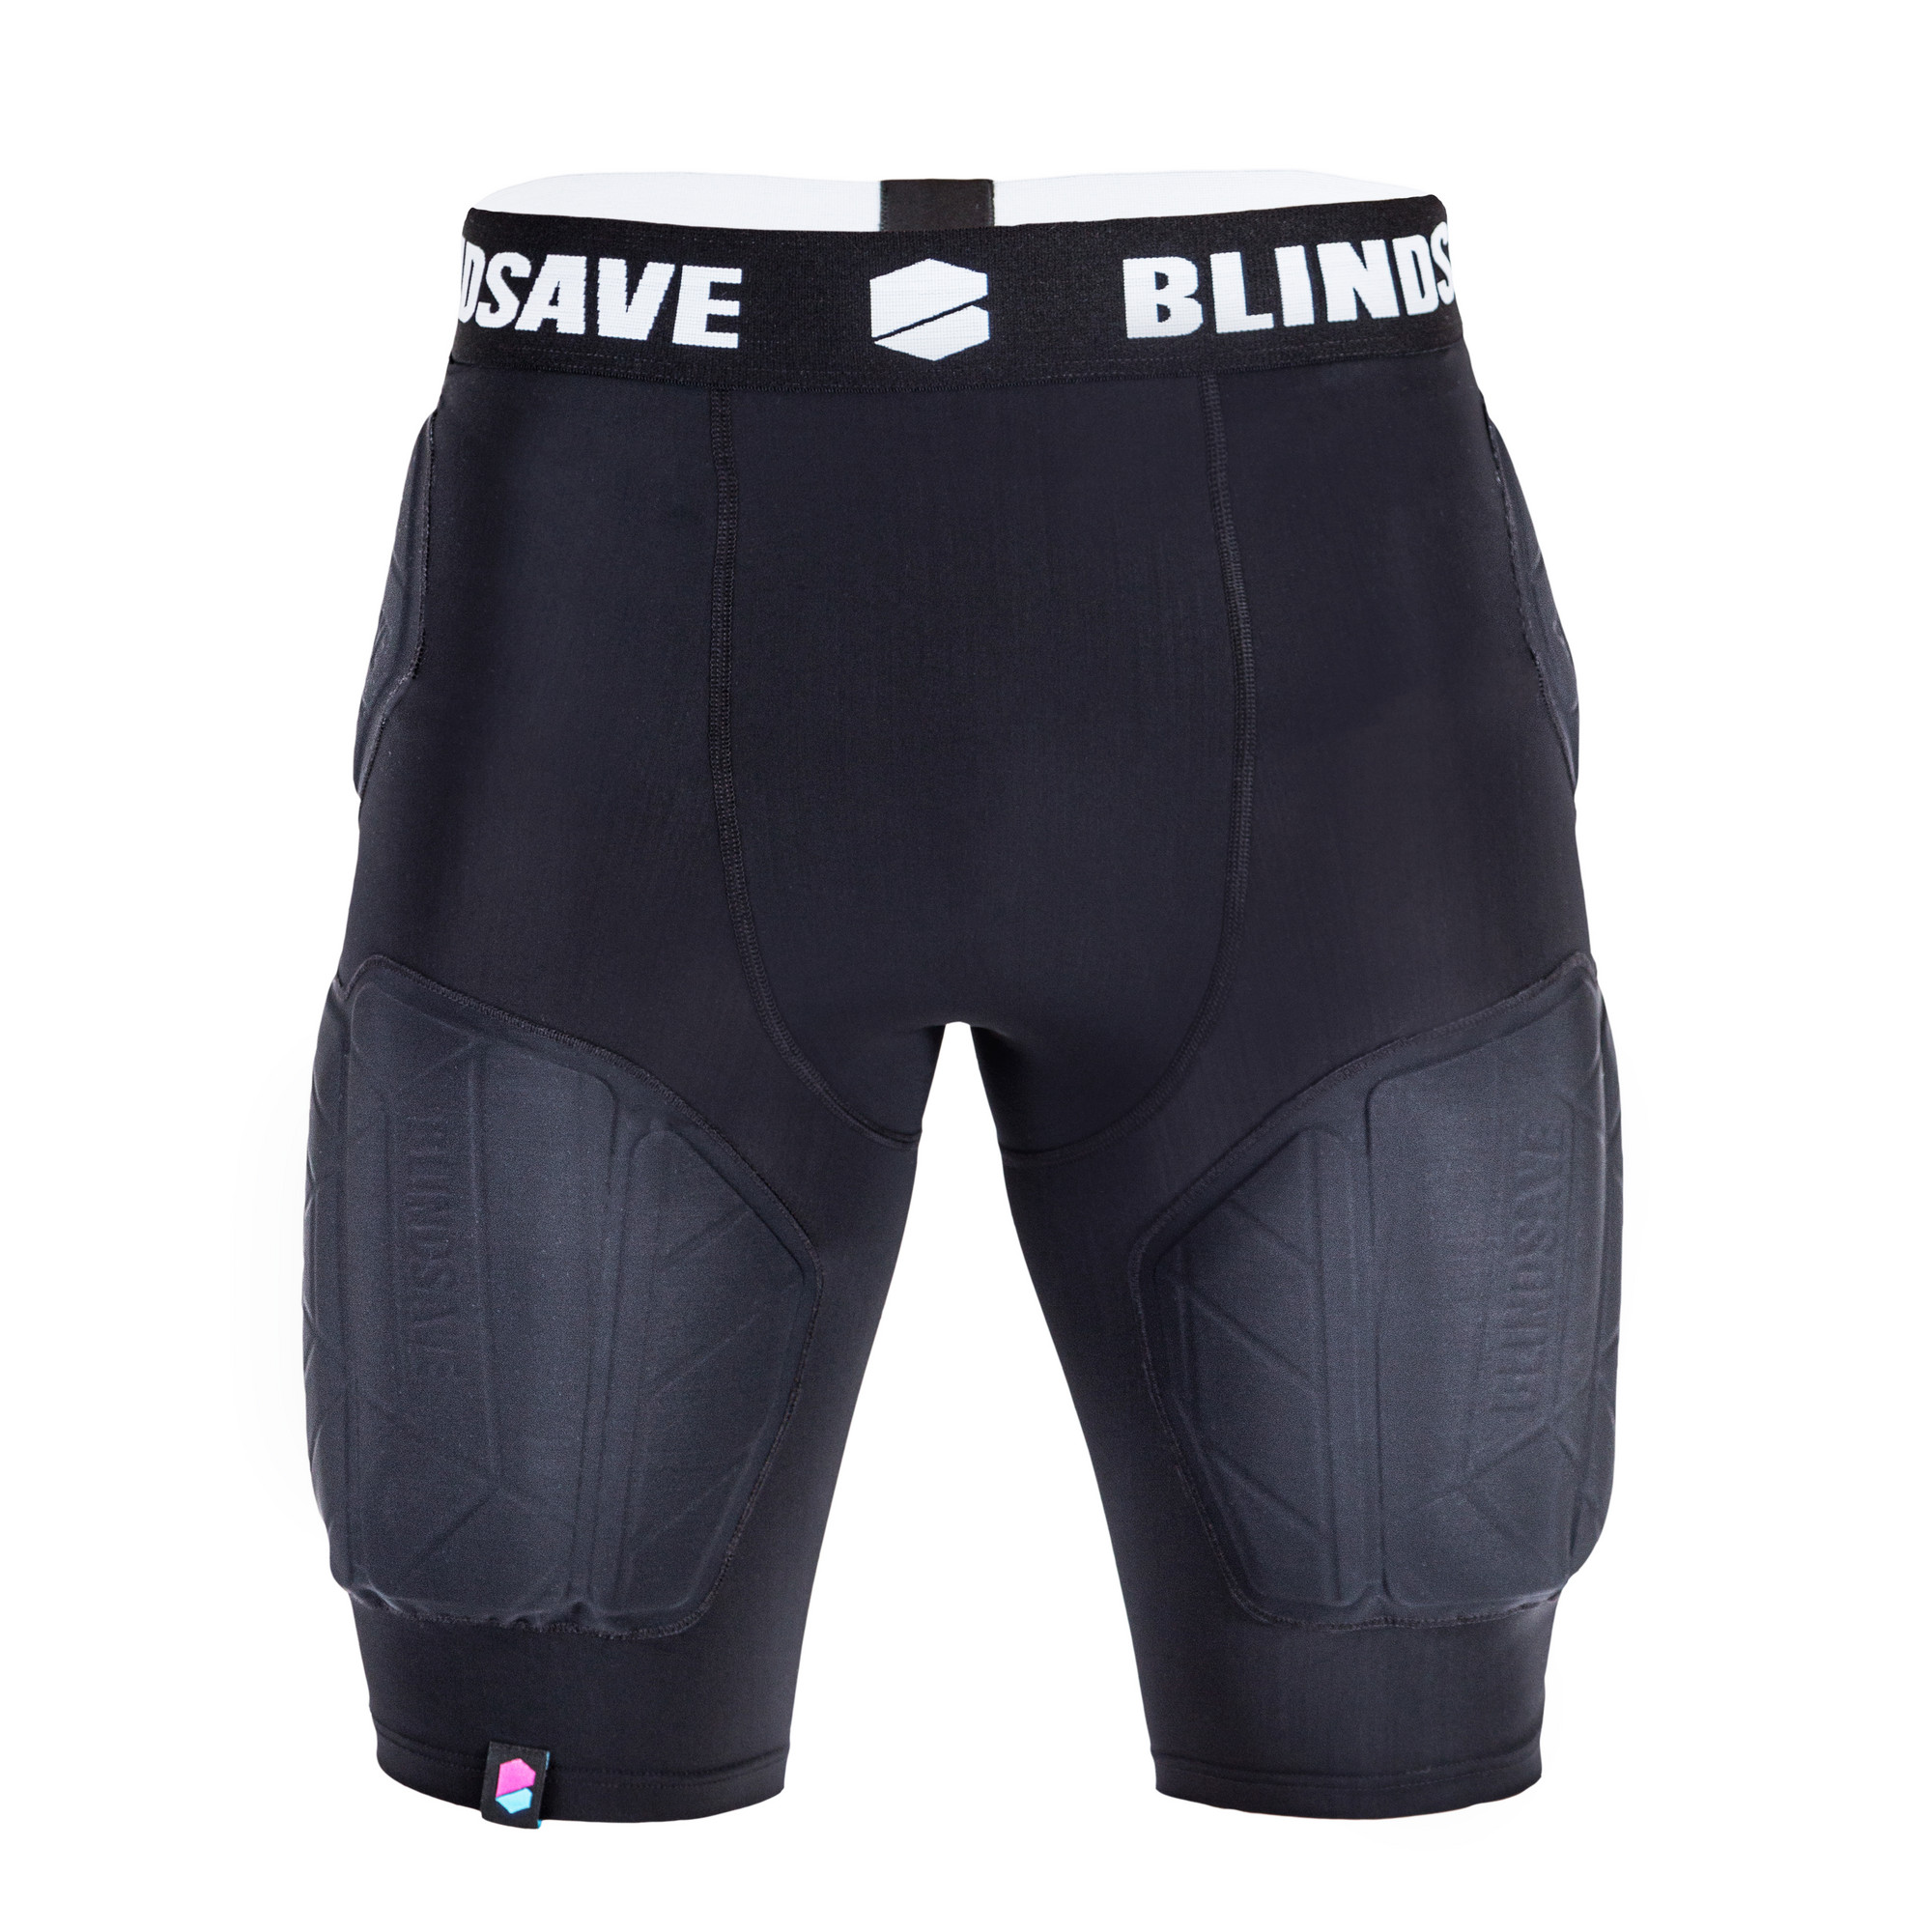 BlindSave Protection shorts PRO + cup XXL, černá